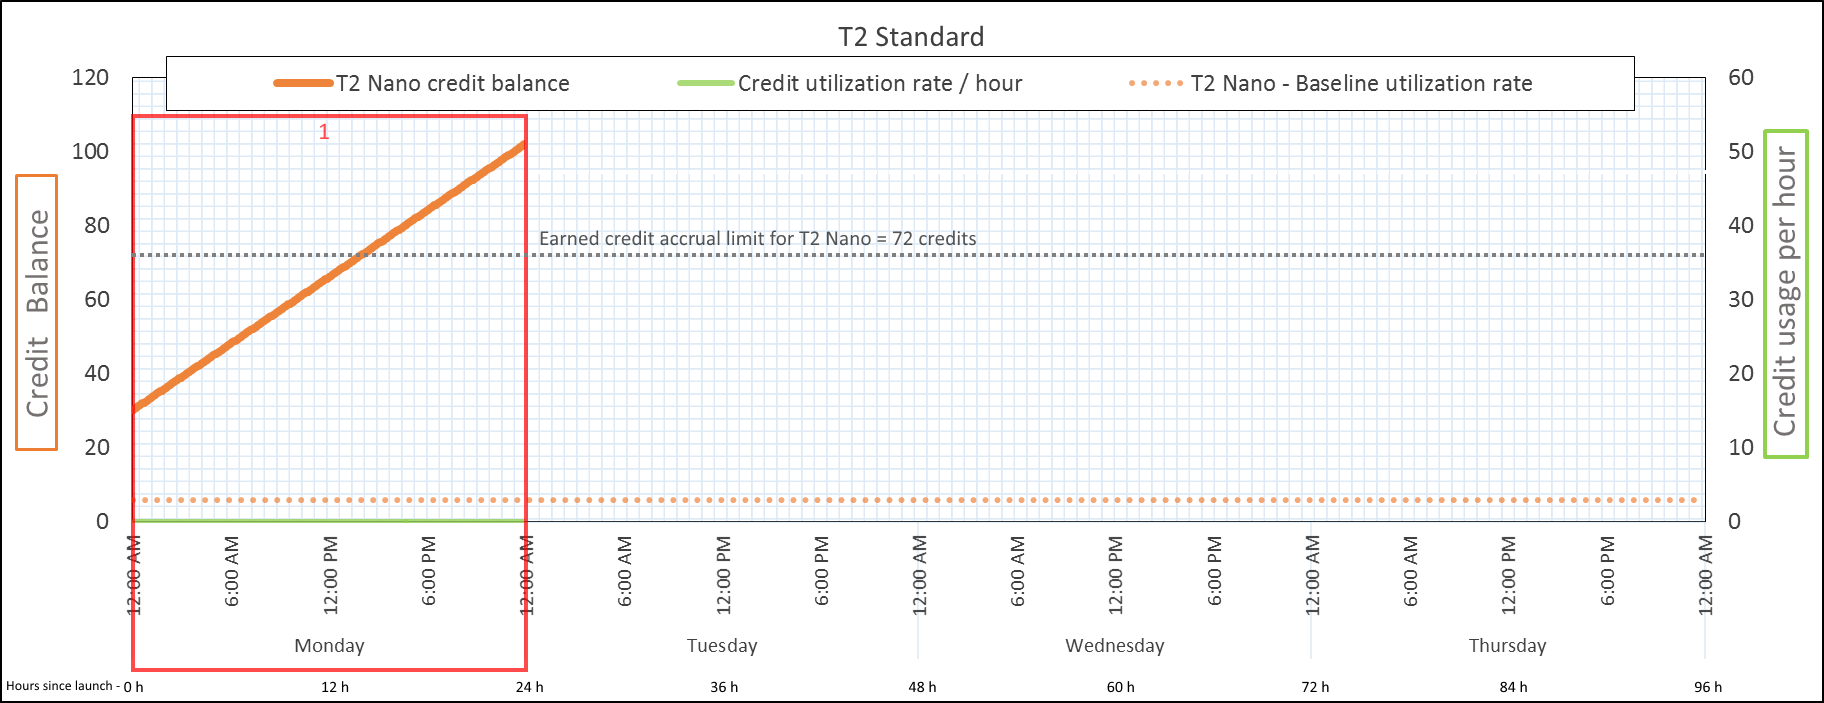 在 T2 Standard 的期間 1 中，額度餘額為 102 點。